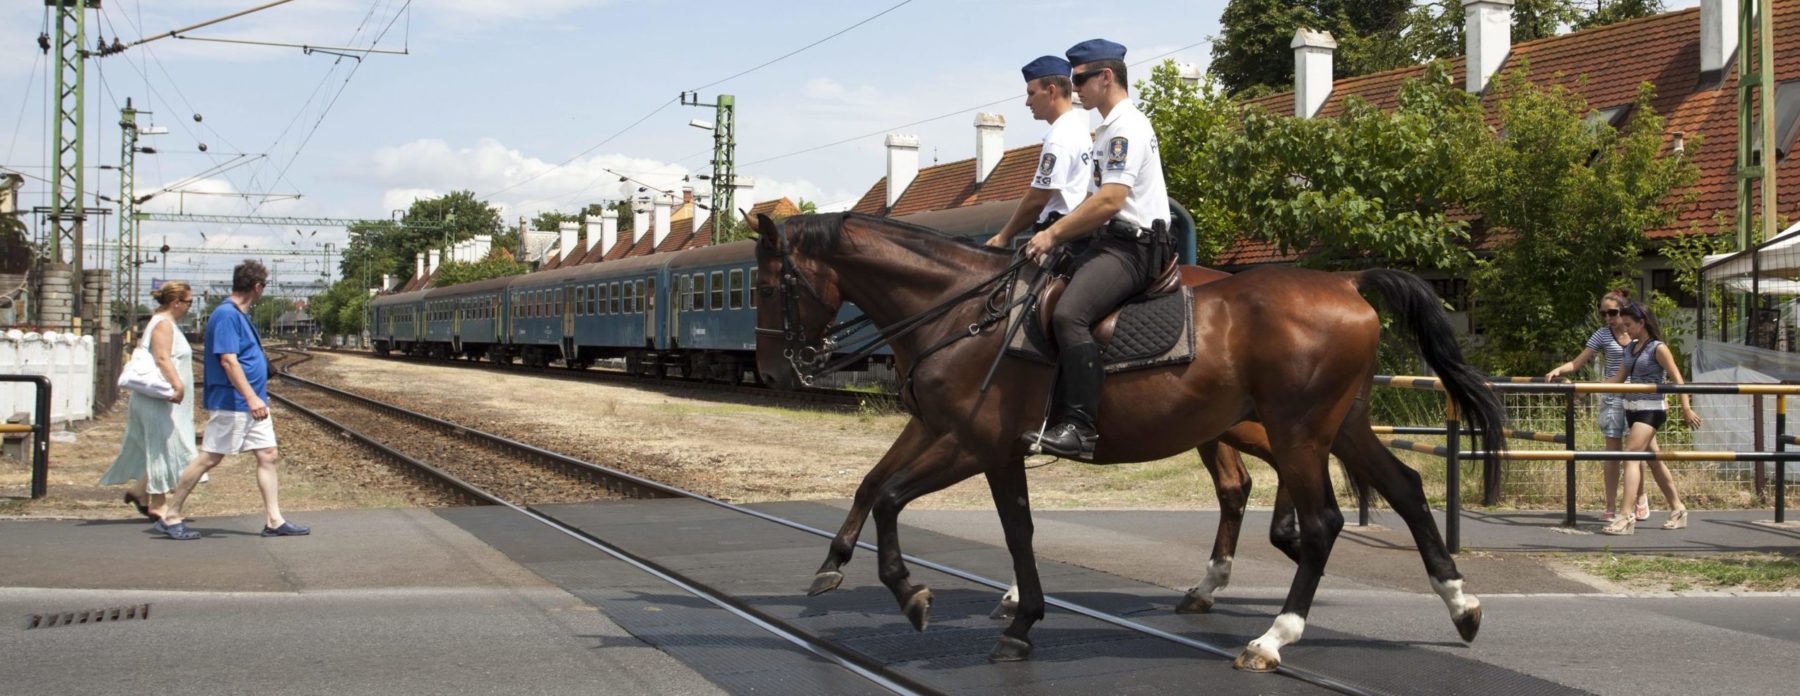 Lovas rendőrök teljesítenek szolgálatot ősszel is a Balaton északi partján, a bűncselekmények megelőzése érdekében.